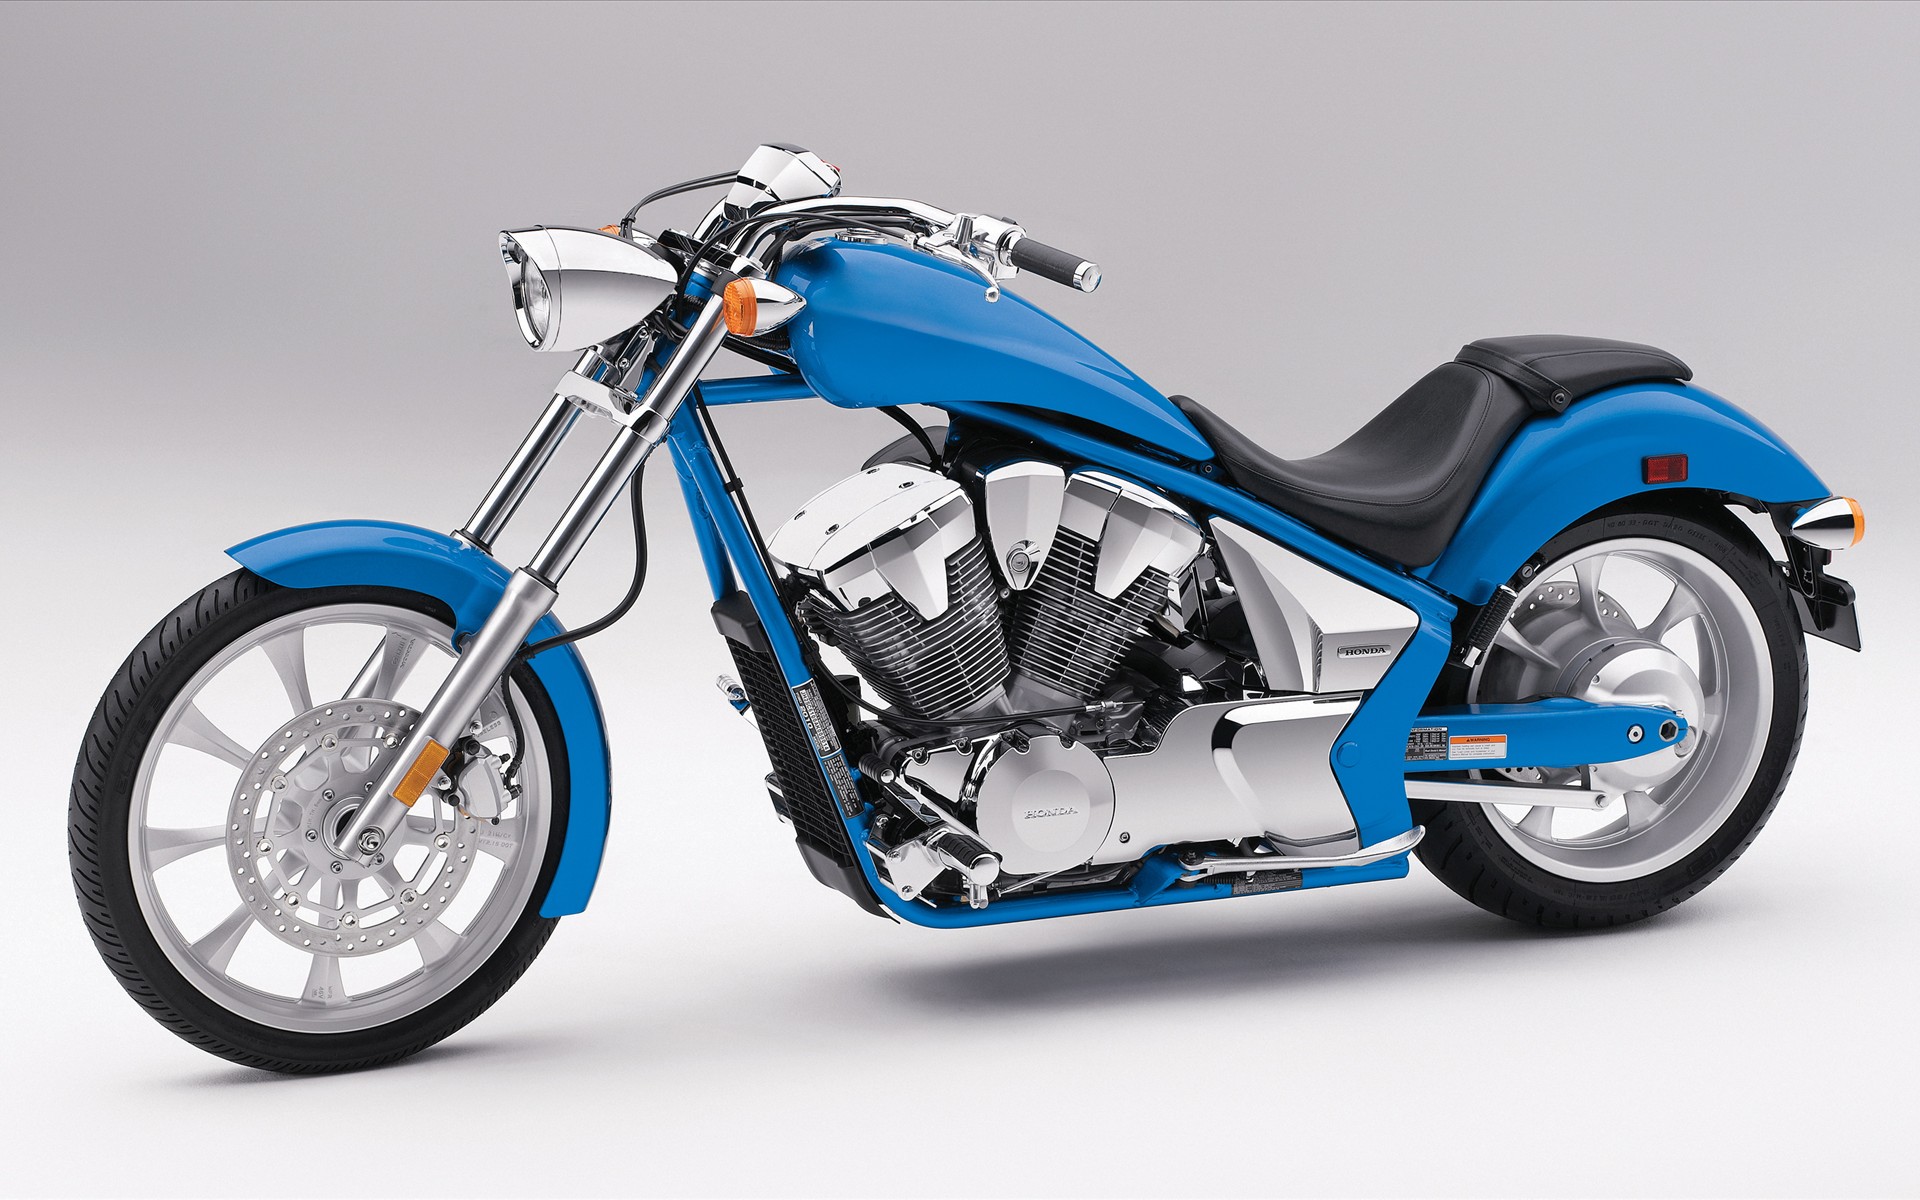 fond d'écran vélo hd 1920x1200,véhicule terrestre,moto,véhicule,véhicule à moteur,bleu